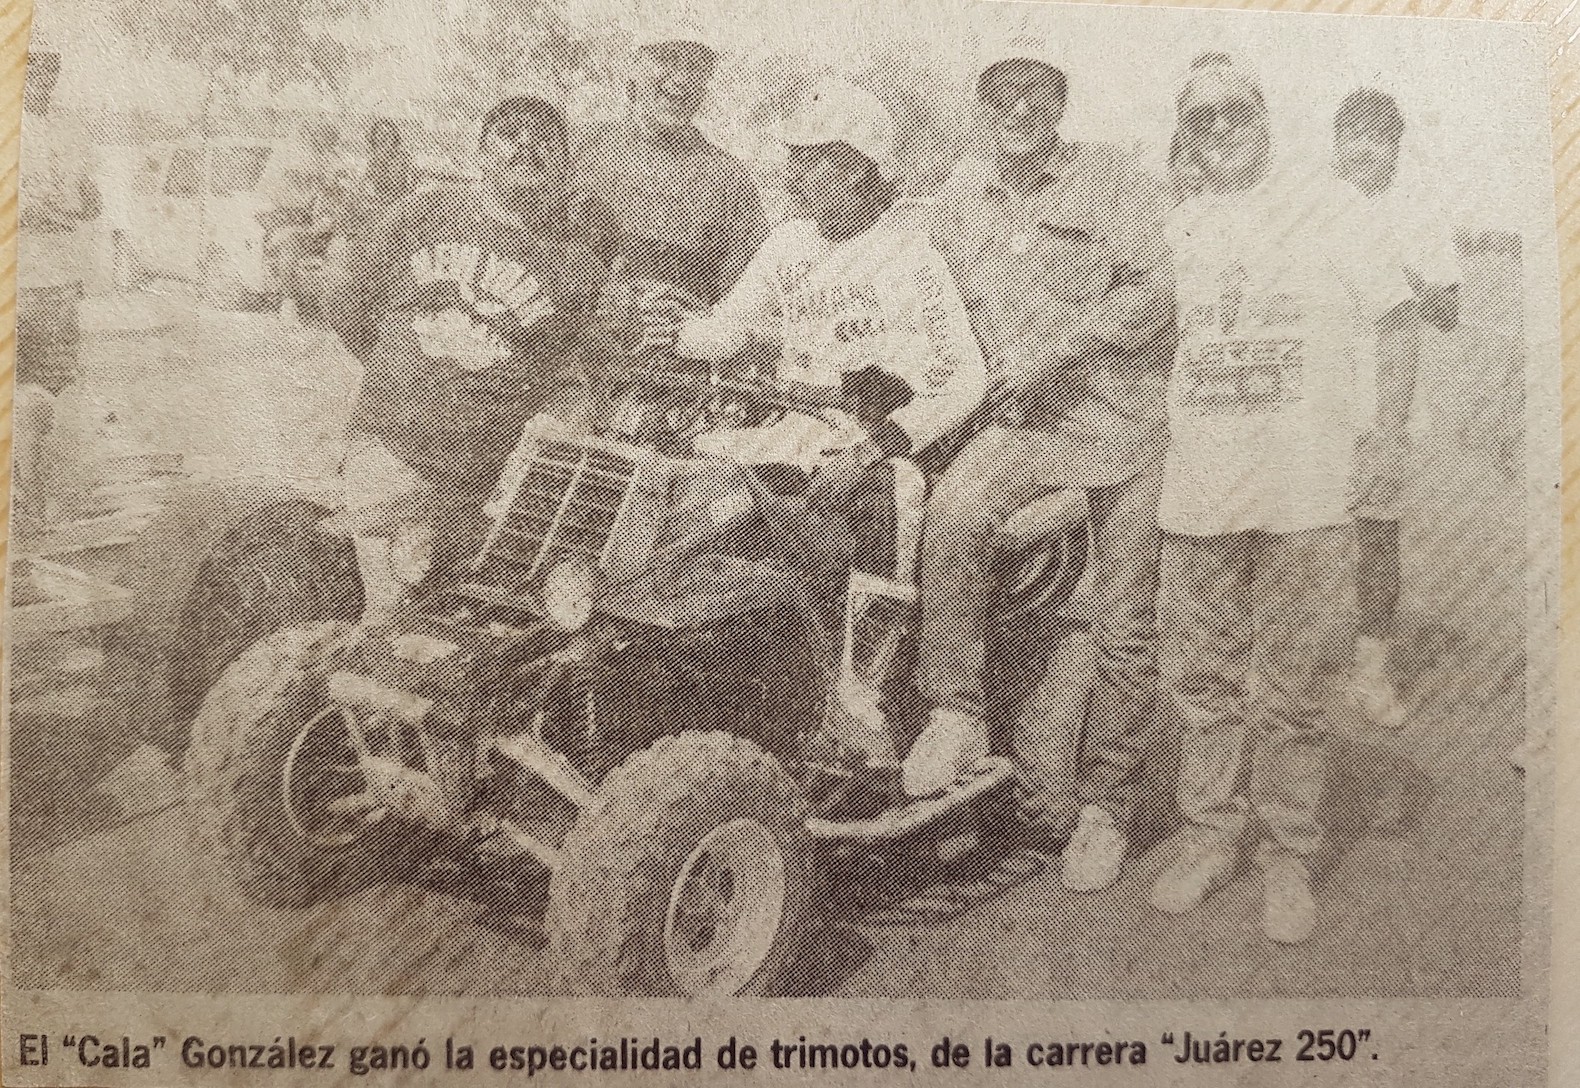 “El Cala” González ganó la especialidad en trimotos durante la carrera
Juárez 250